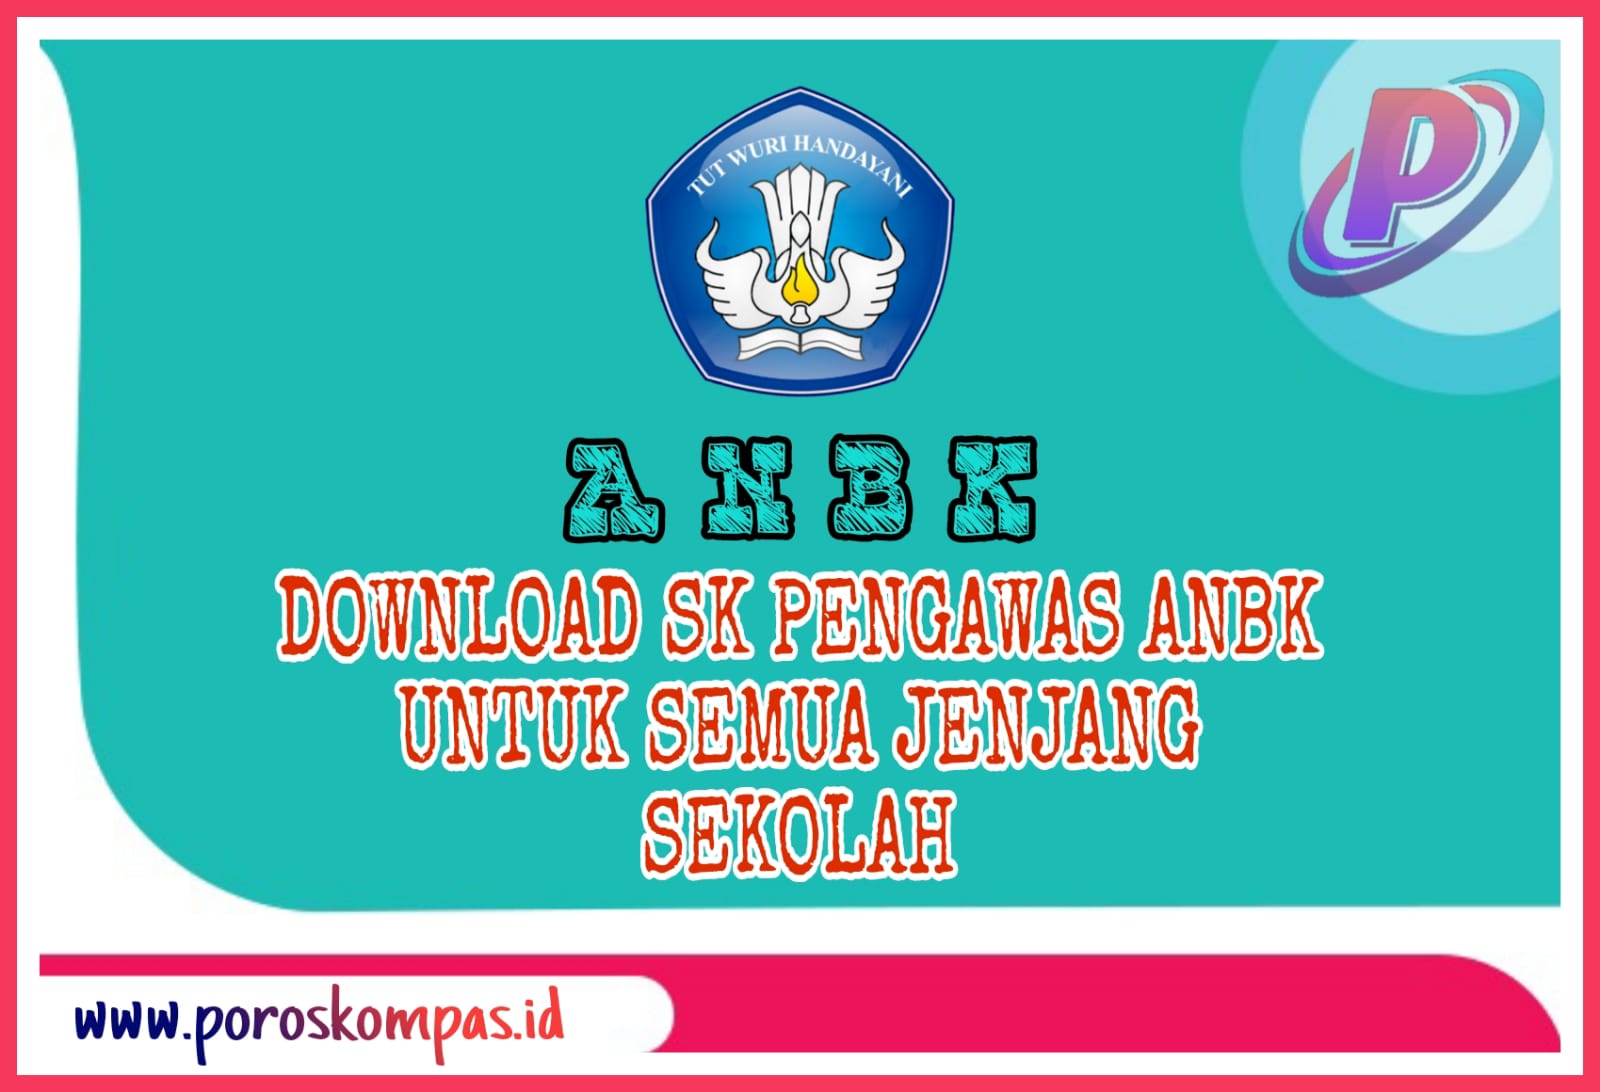 Download Contoh SK Pengawas ANBK